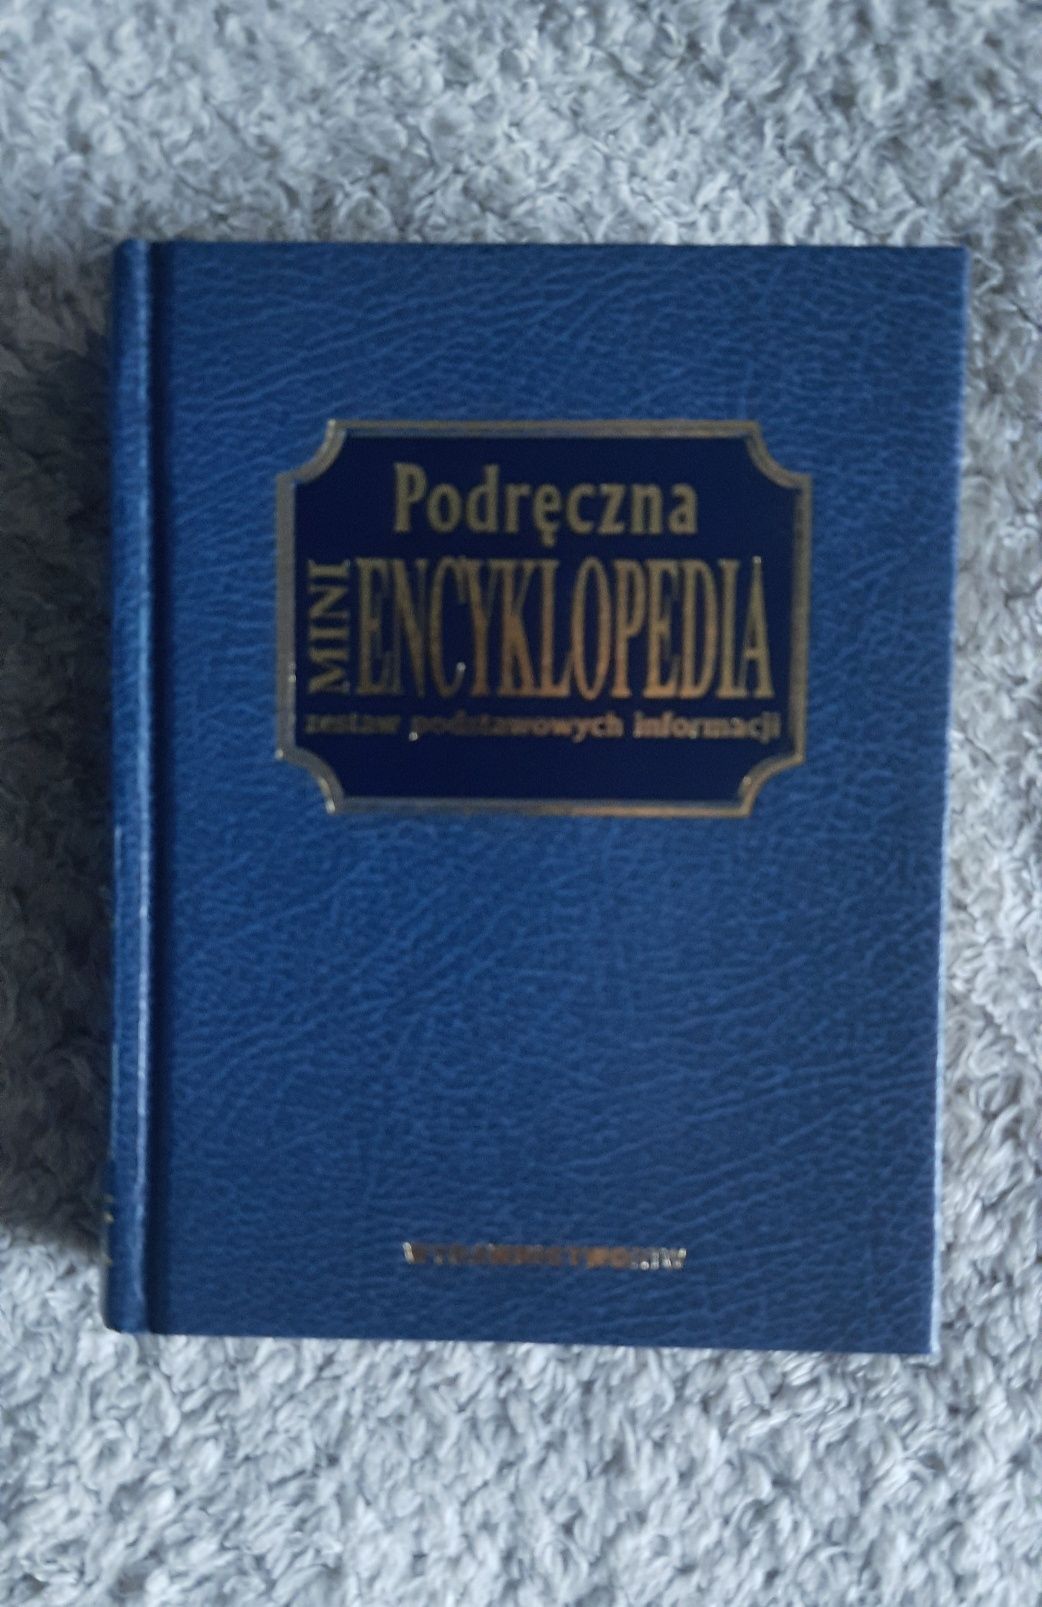 Mała encyklopedia